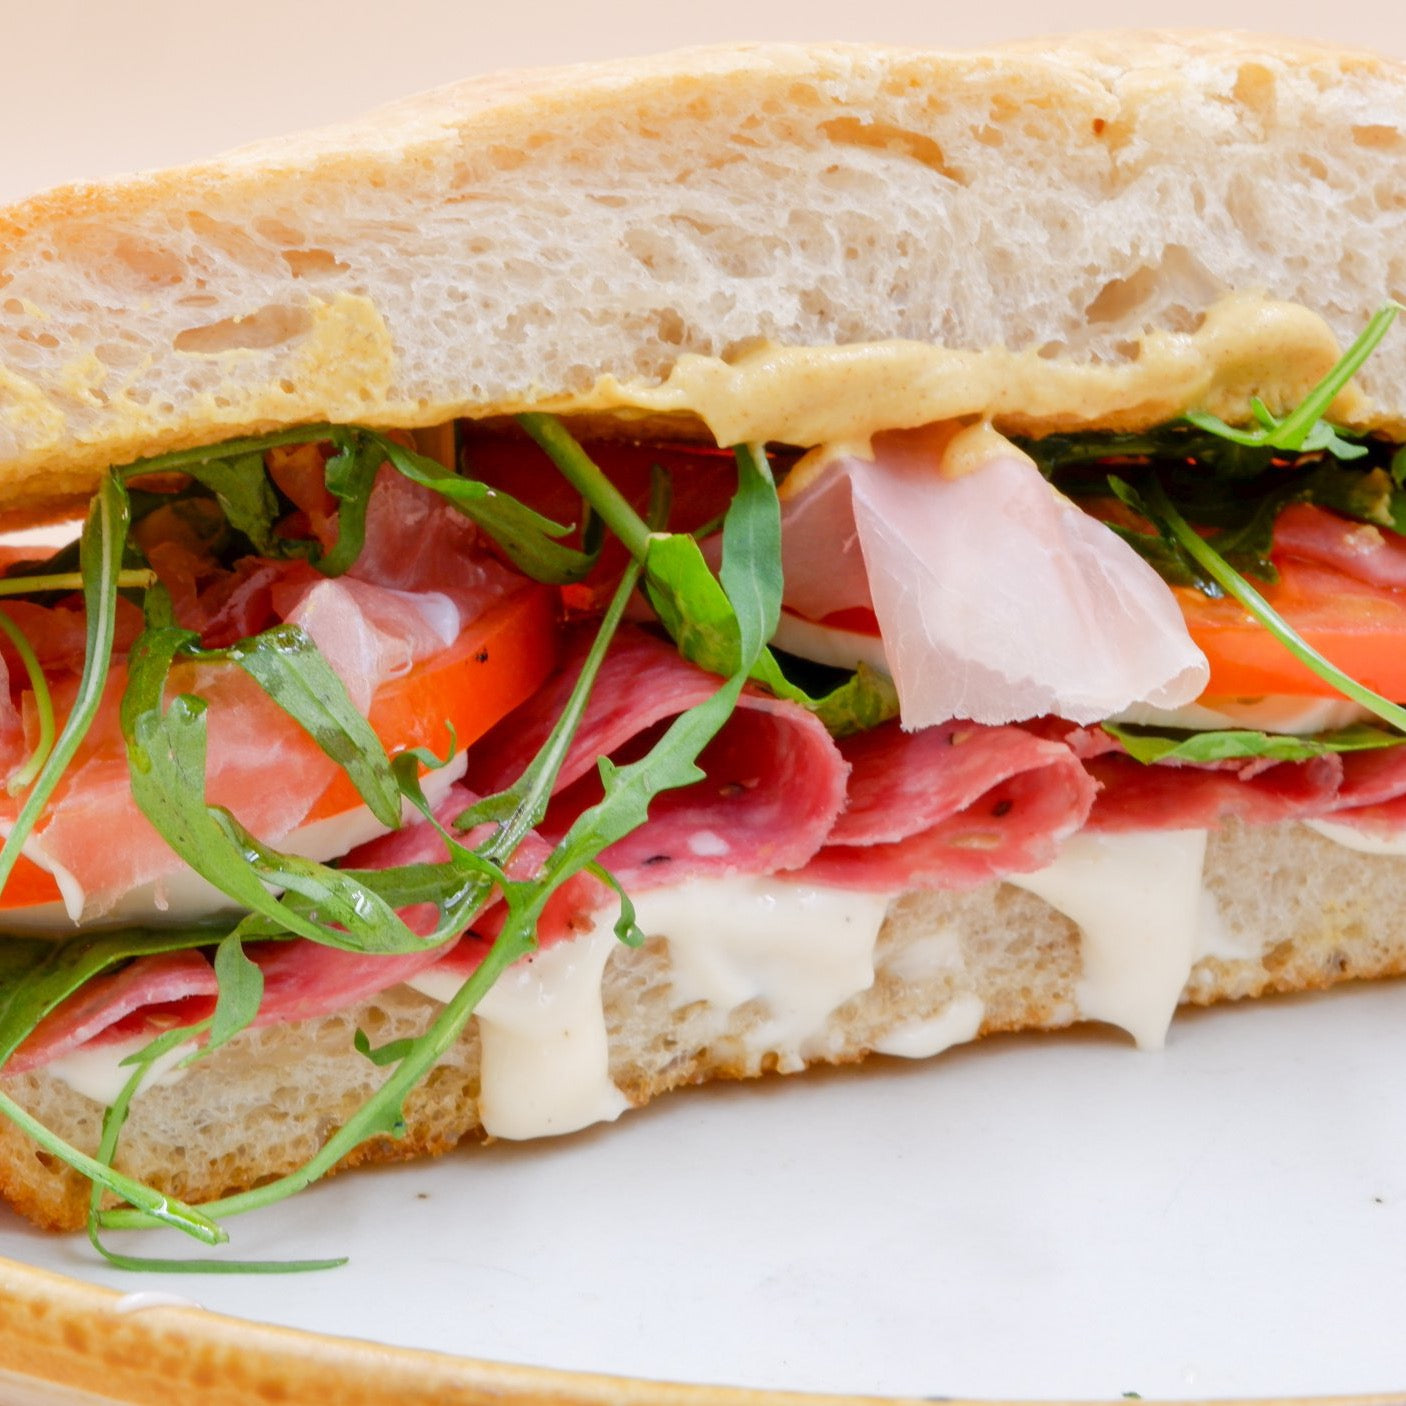 "Italian" Sandwich